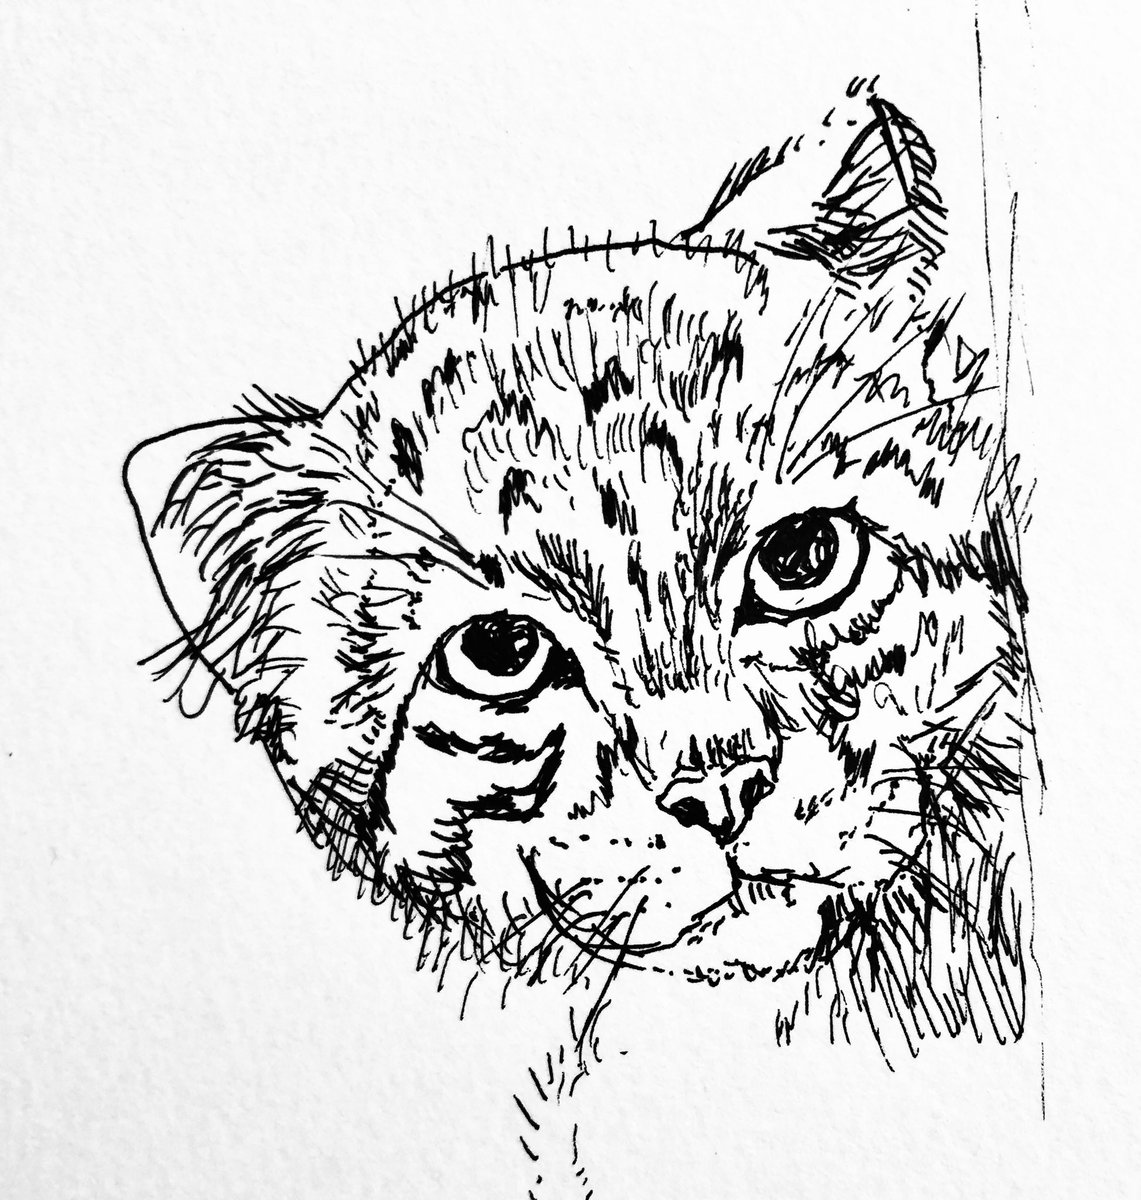 あお ニャーマン V Twitter マヌルネコ 下書きなしで今回も楽しく描かせて頂きました トラなお様感謝です マヌルネコイラスト ネコ科 イラスト 猫 ねこ ペン画 らくがき